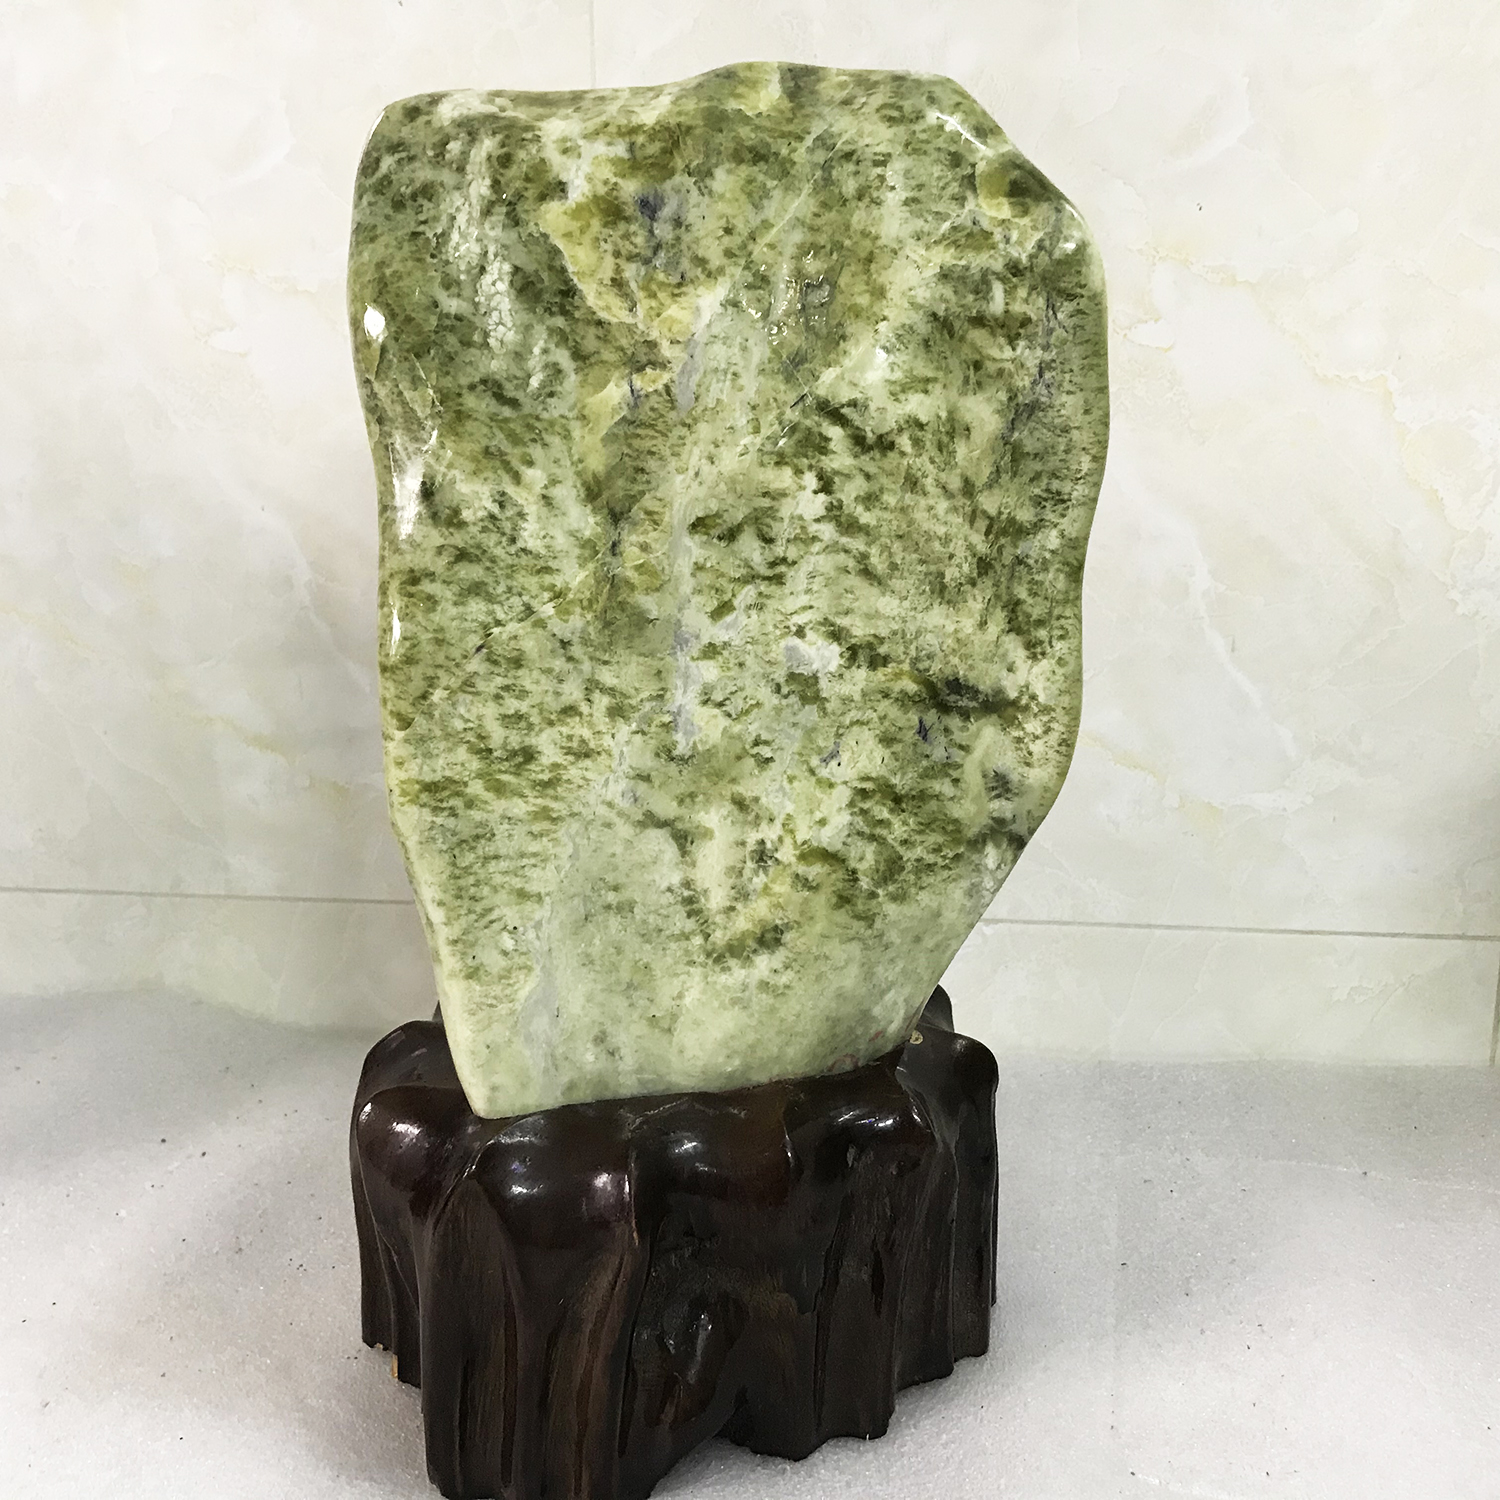 Cây đá phong thủy để bàn ngọc tự nhiên màu xanh lá đậm bóng cho người mệnh Hỏa và Mộc nặng 8 kg